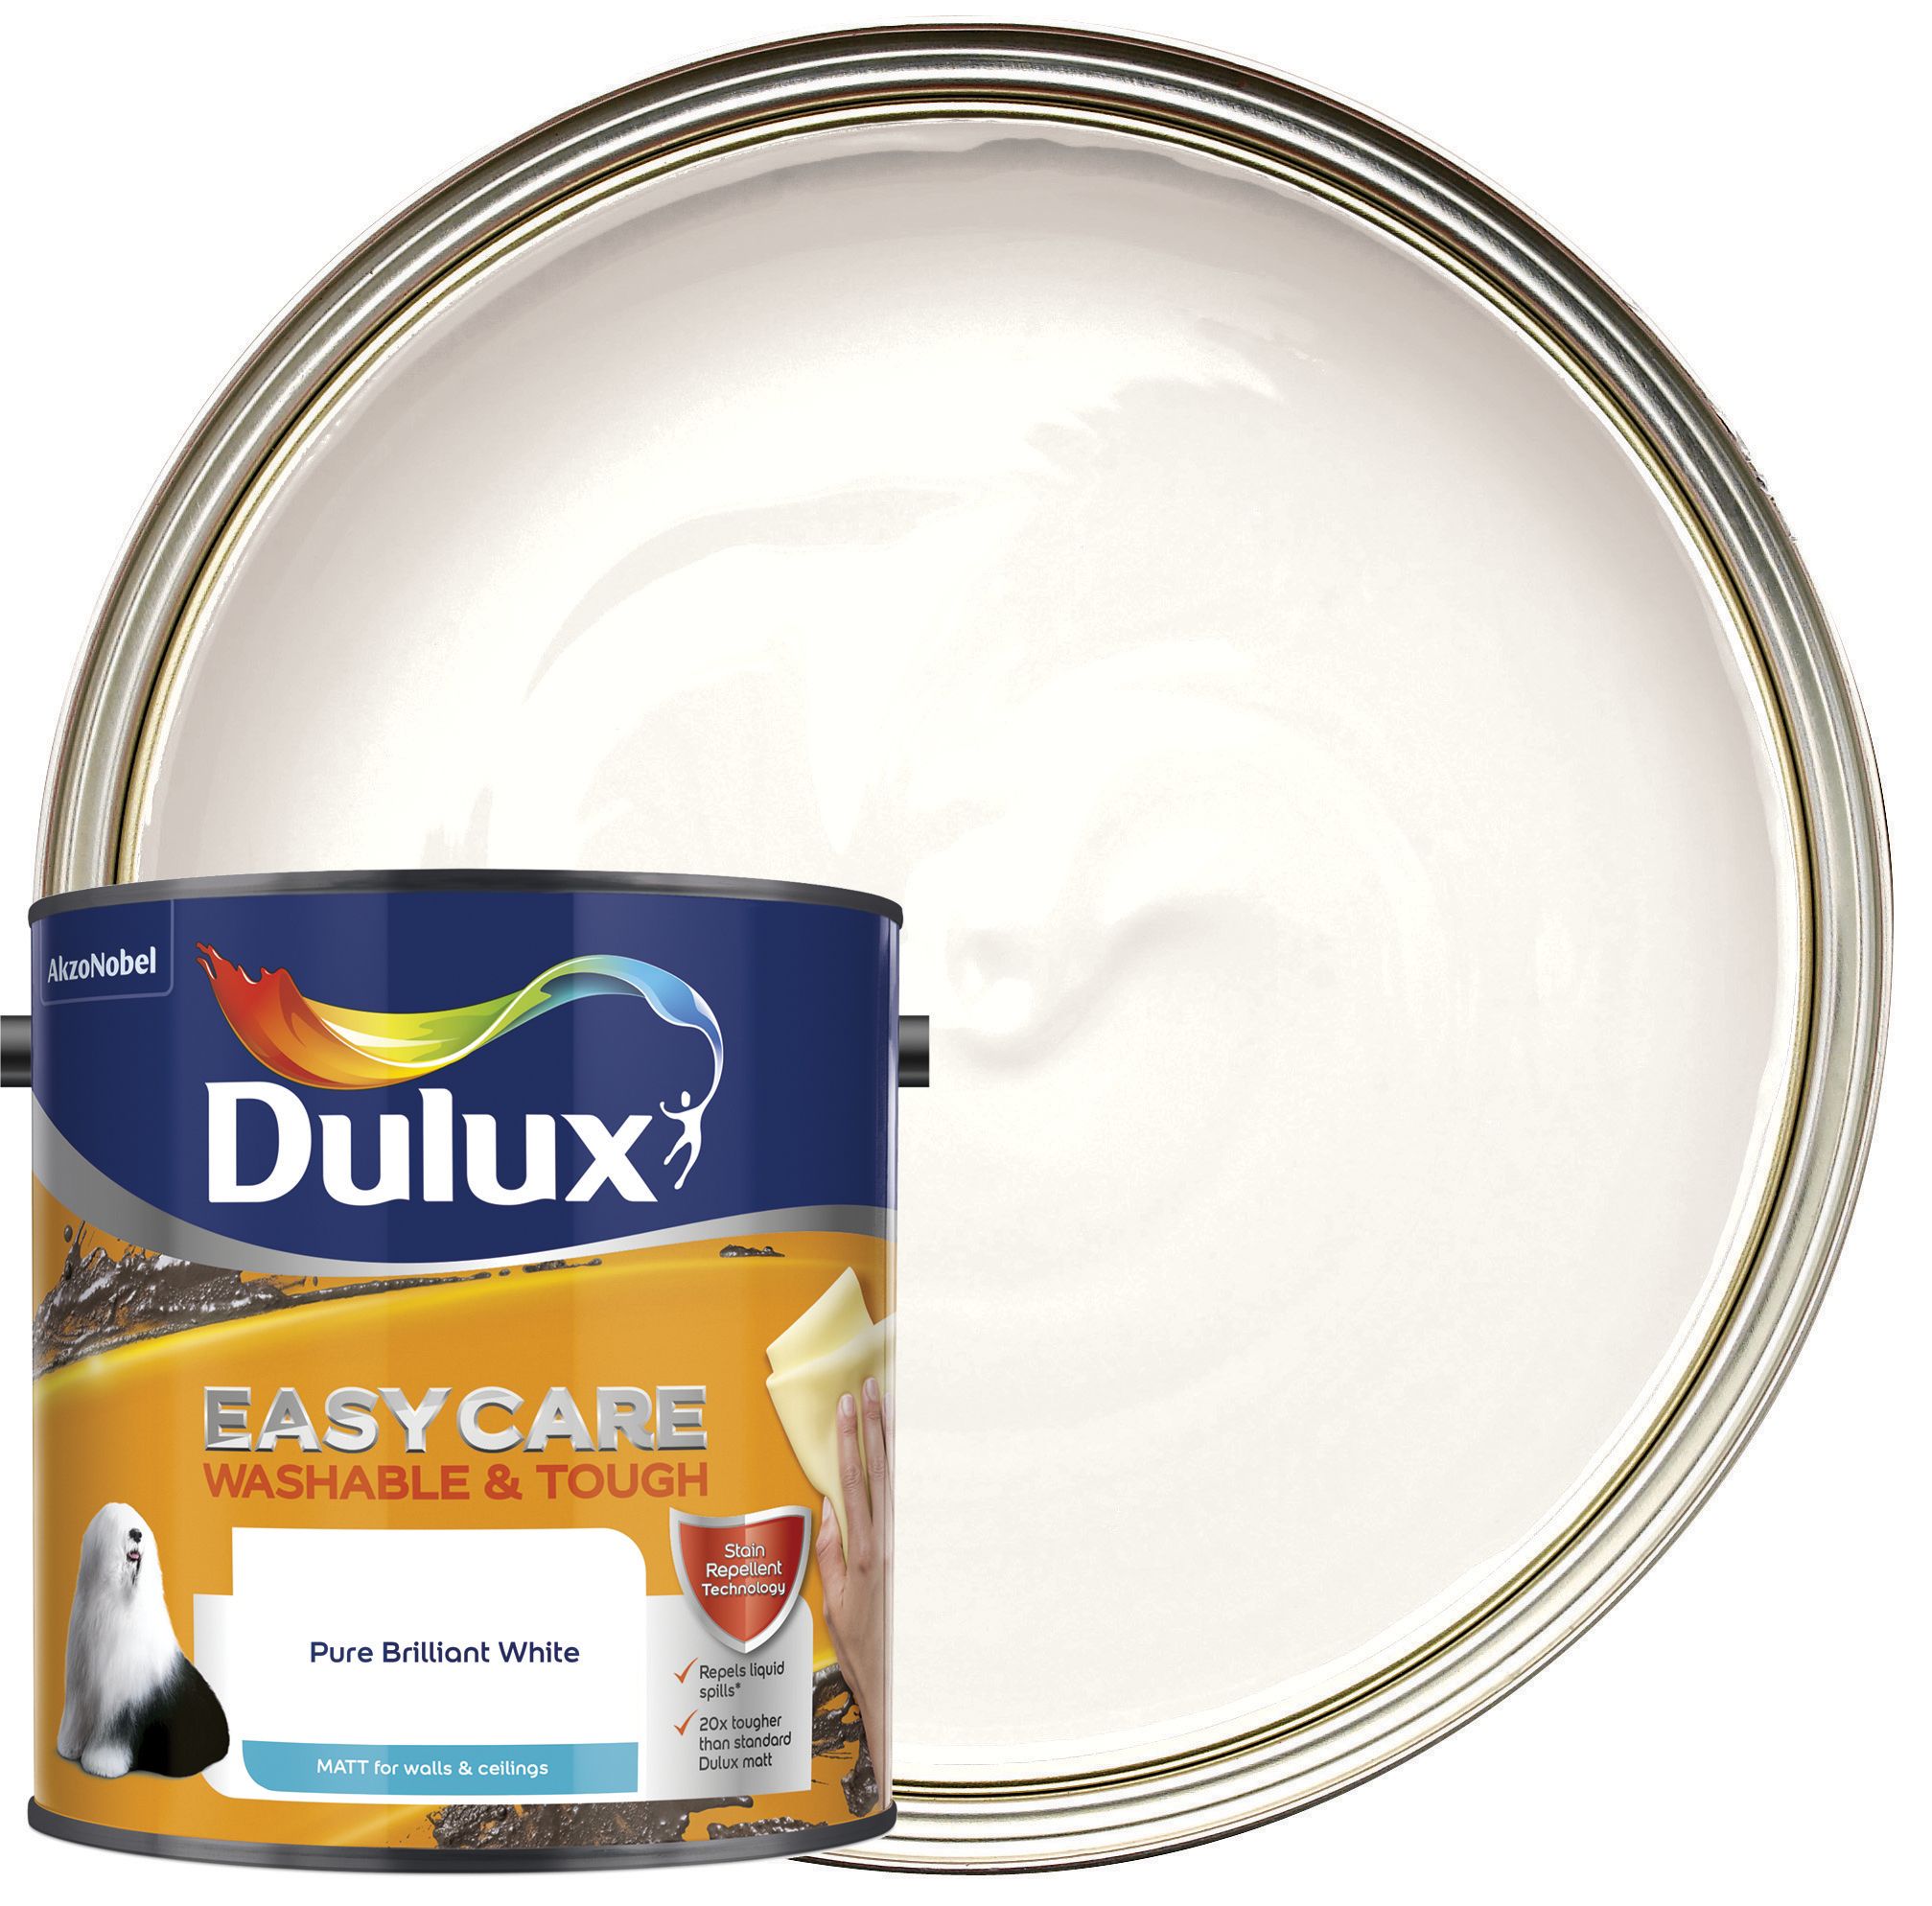 Image of Dulux Easycare Washable & Tough Matt Emulsion Paint - Pure Brilliant White - 2.5L